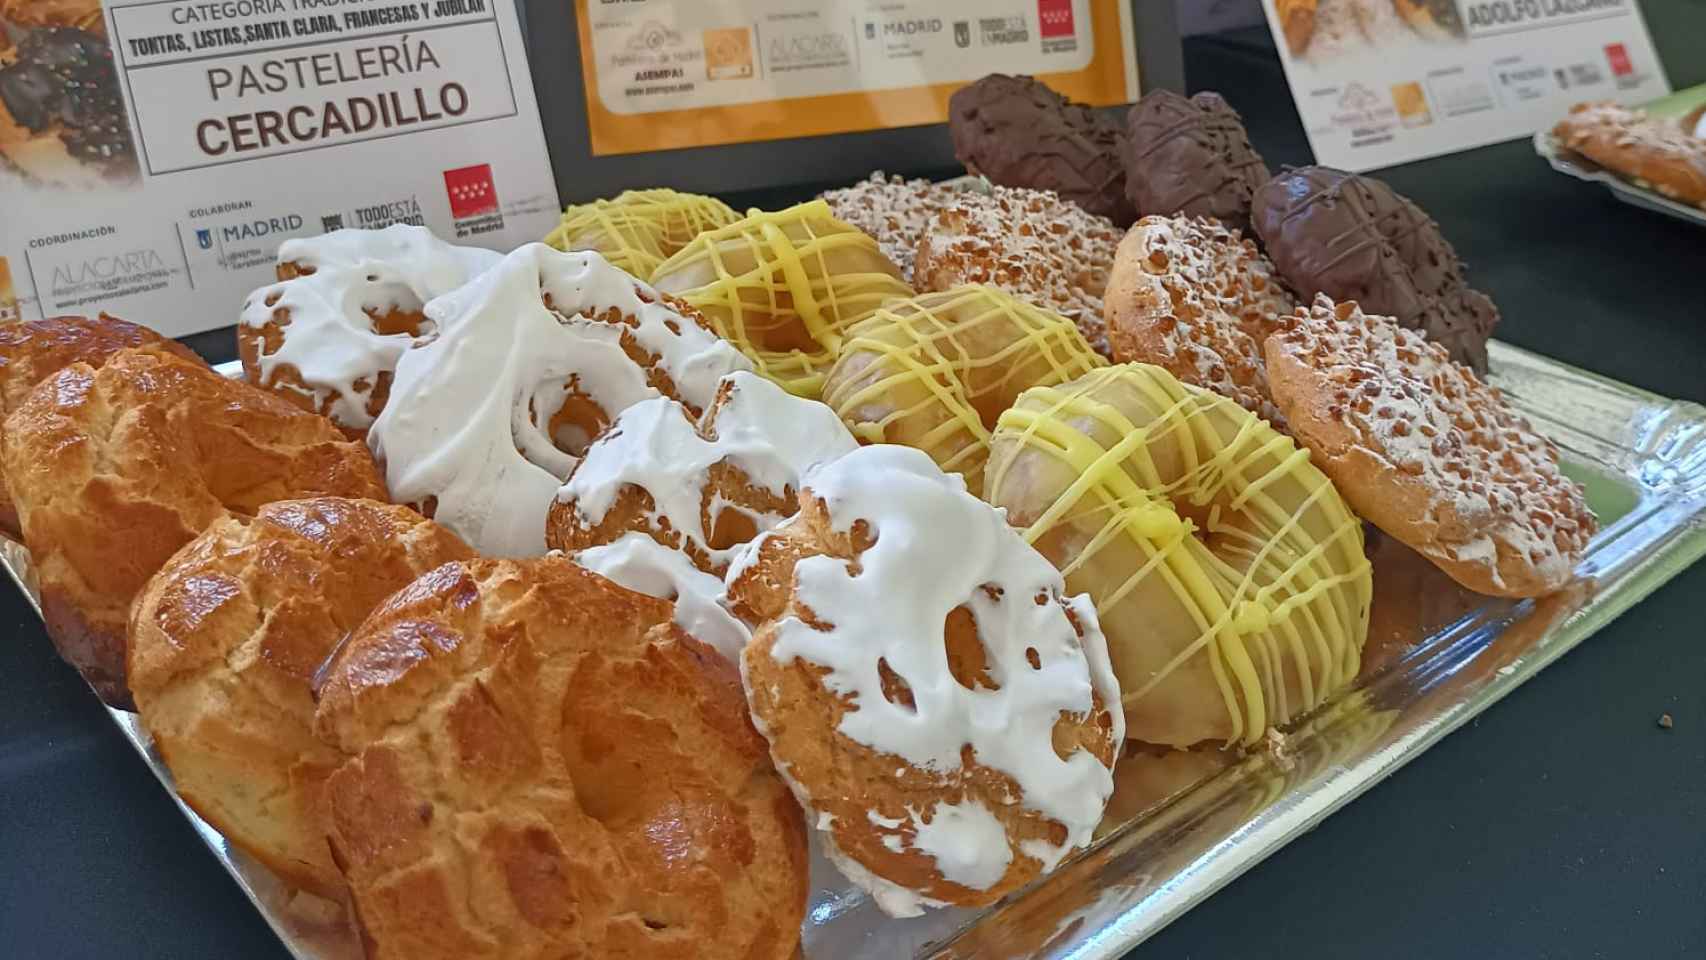 Las rosquillas de San Isidro de la pastelería Cercadillo de Madrid.